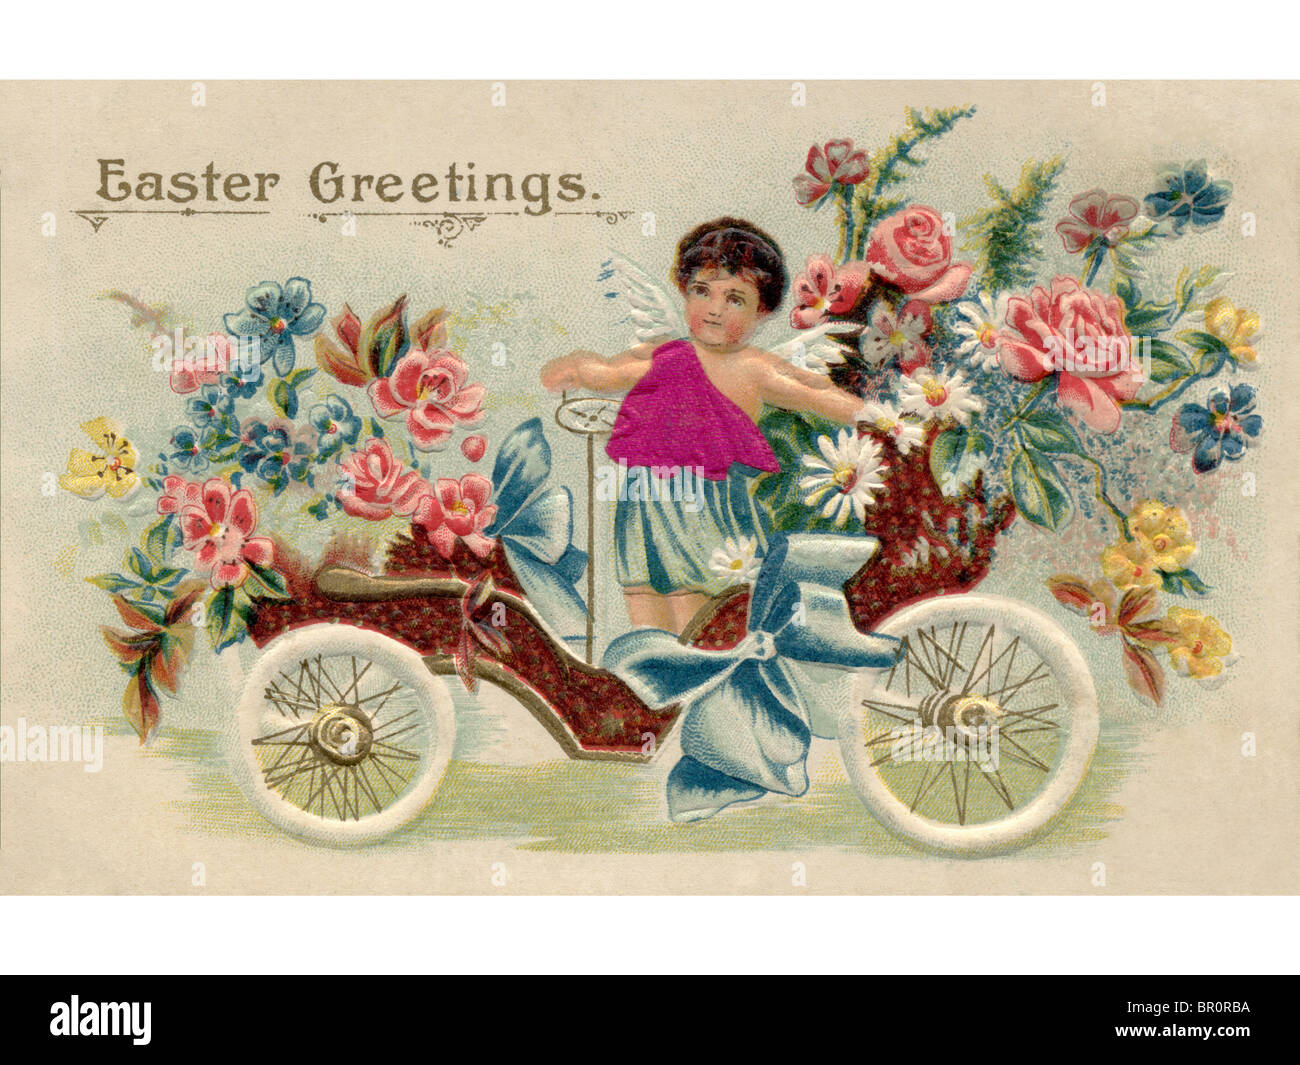 Une carte postale de Pâques vintage avec un chérubin équitation une antique voiture pleine de fleurs Banque D'Images